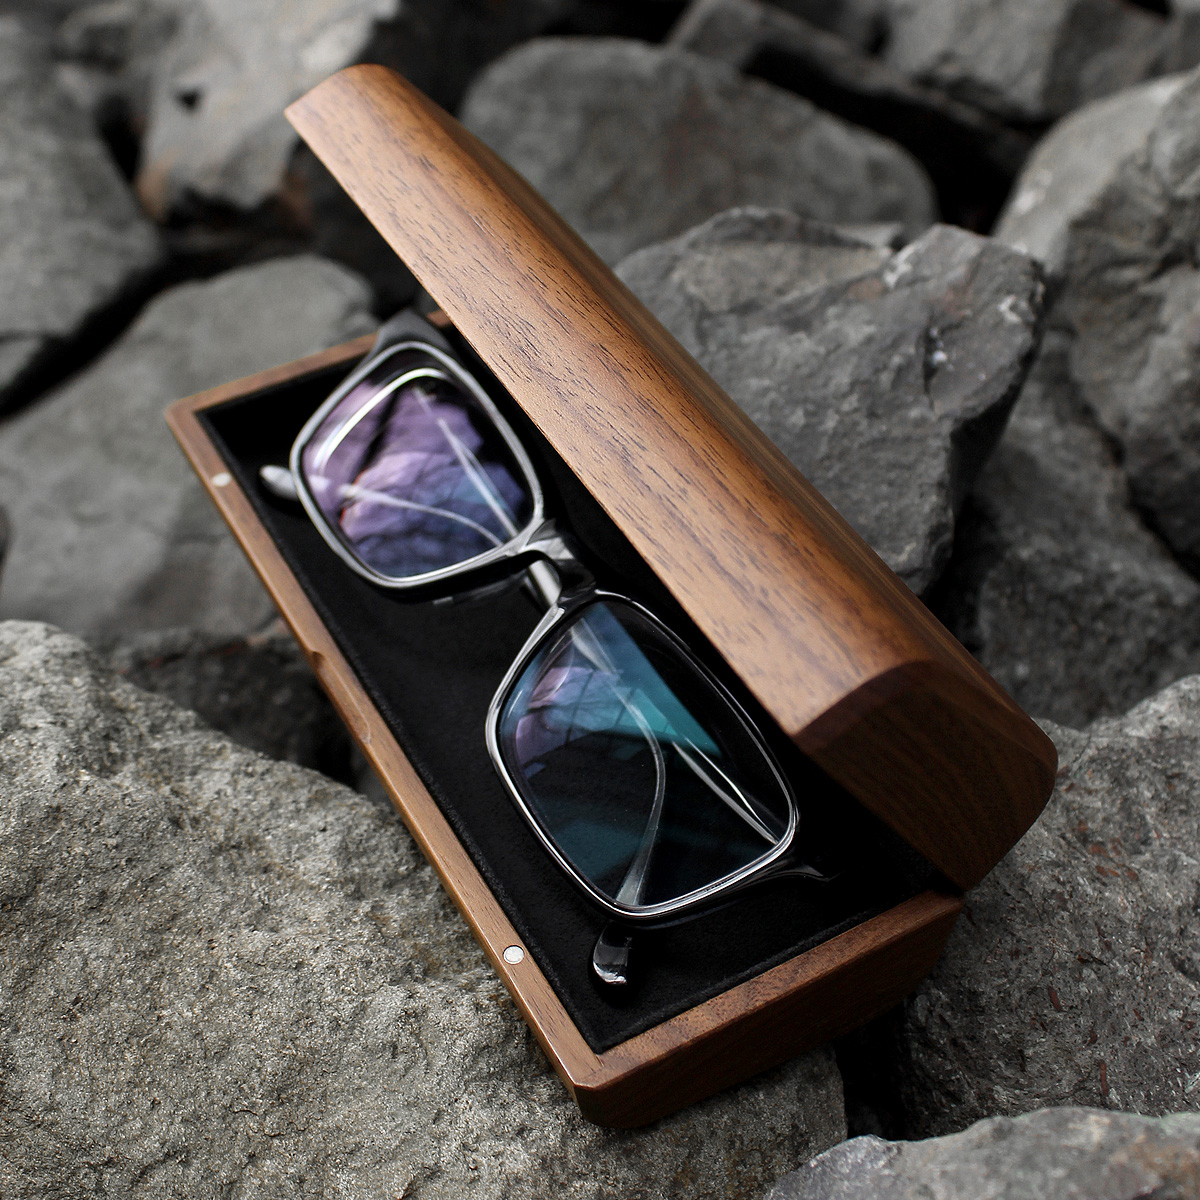 大切なメガネを優しく保管できる上質な木製メガネケース